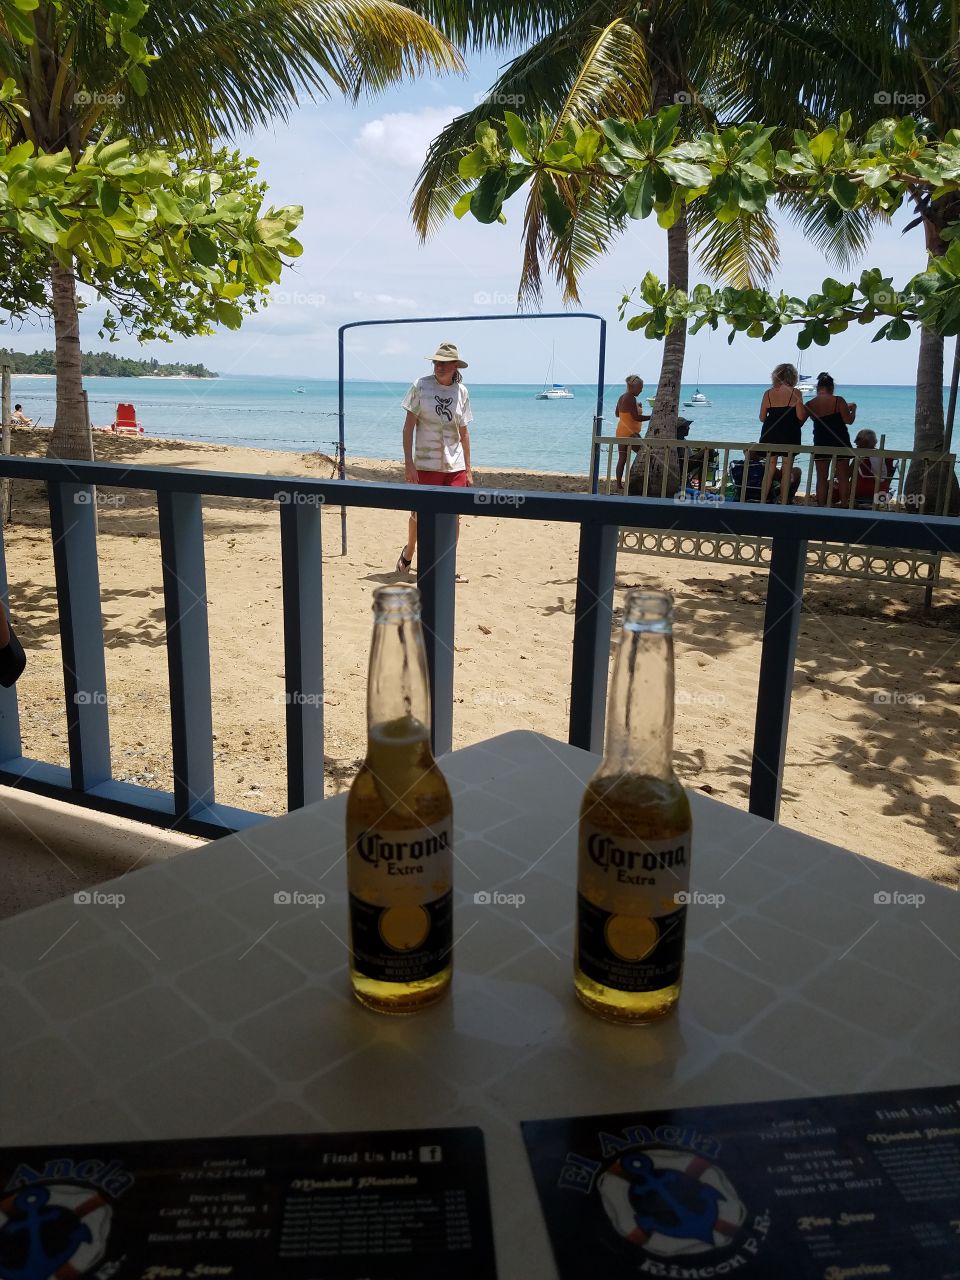 Corona beers at Marina, Rincon Puerto Rico